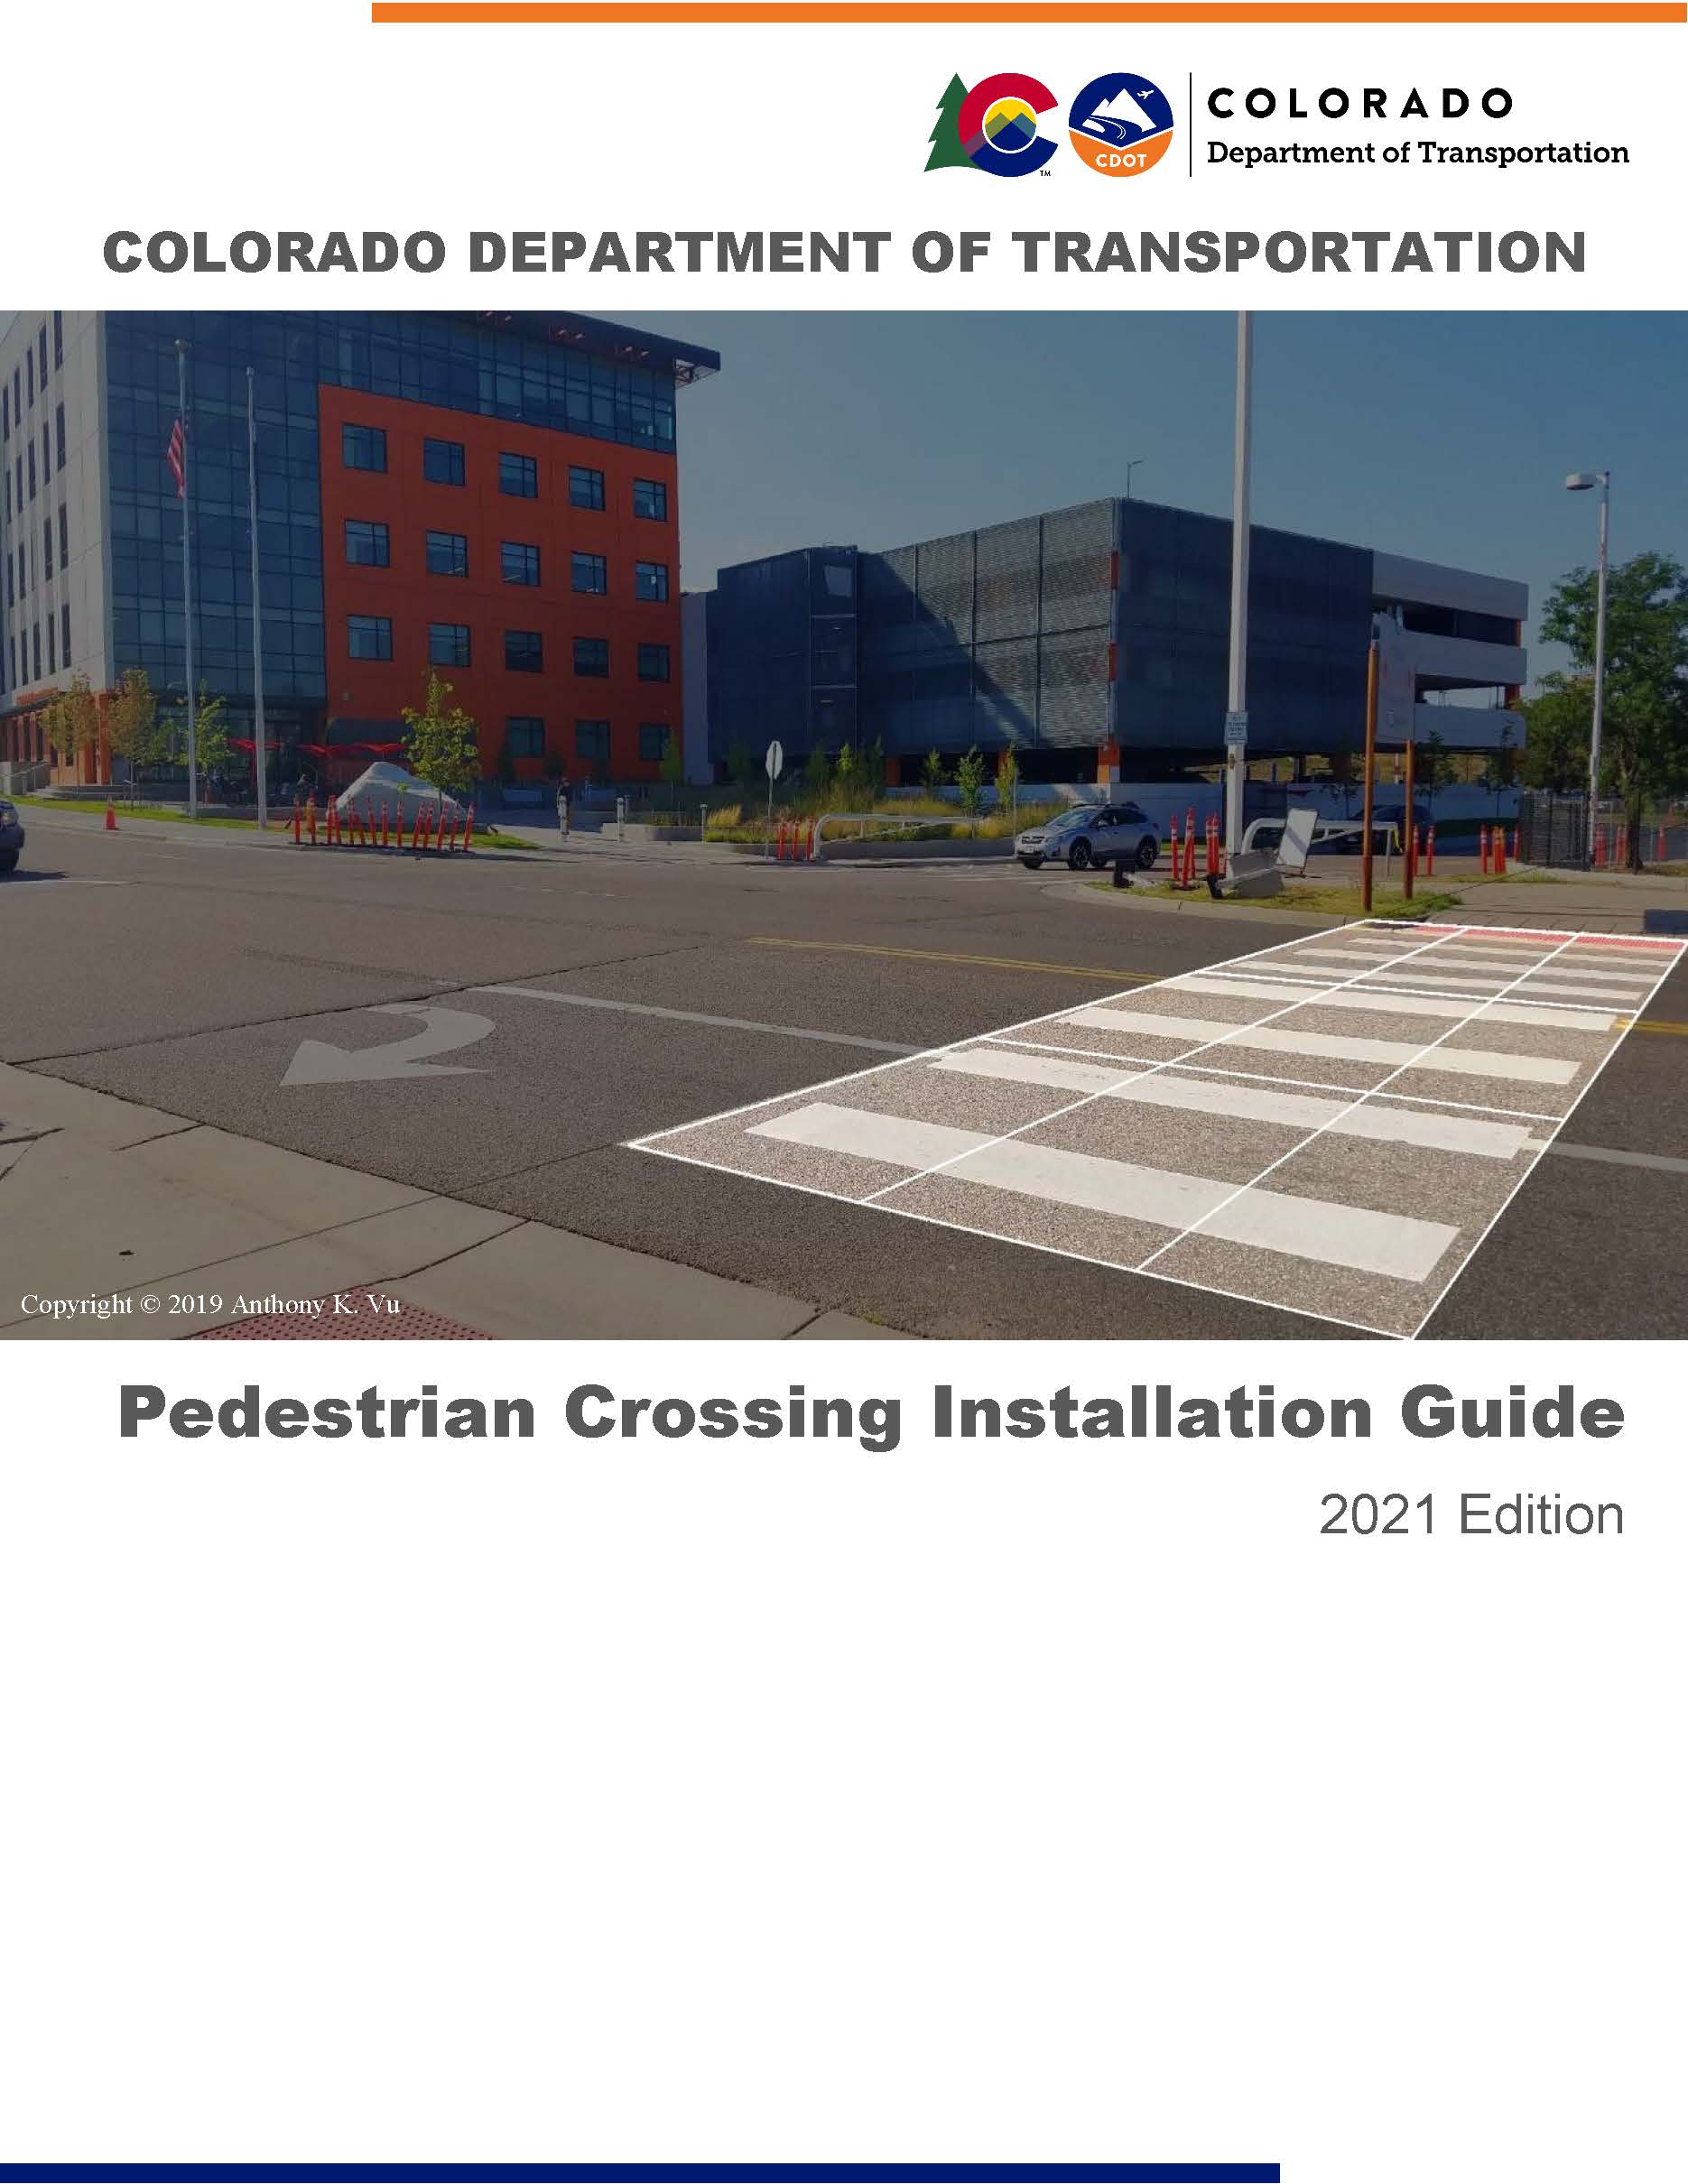 Pedestrian Crosswalk Installation Guidelines detail image